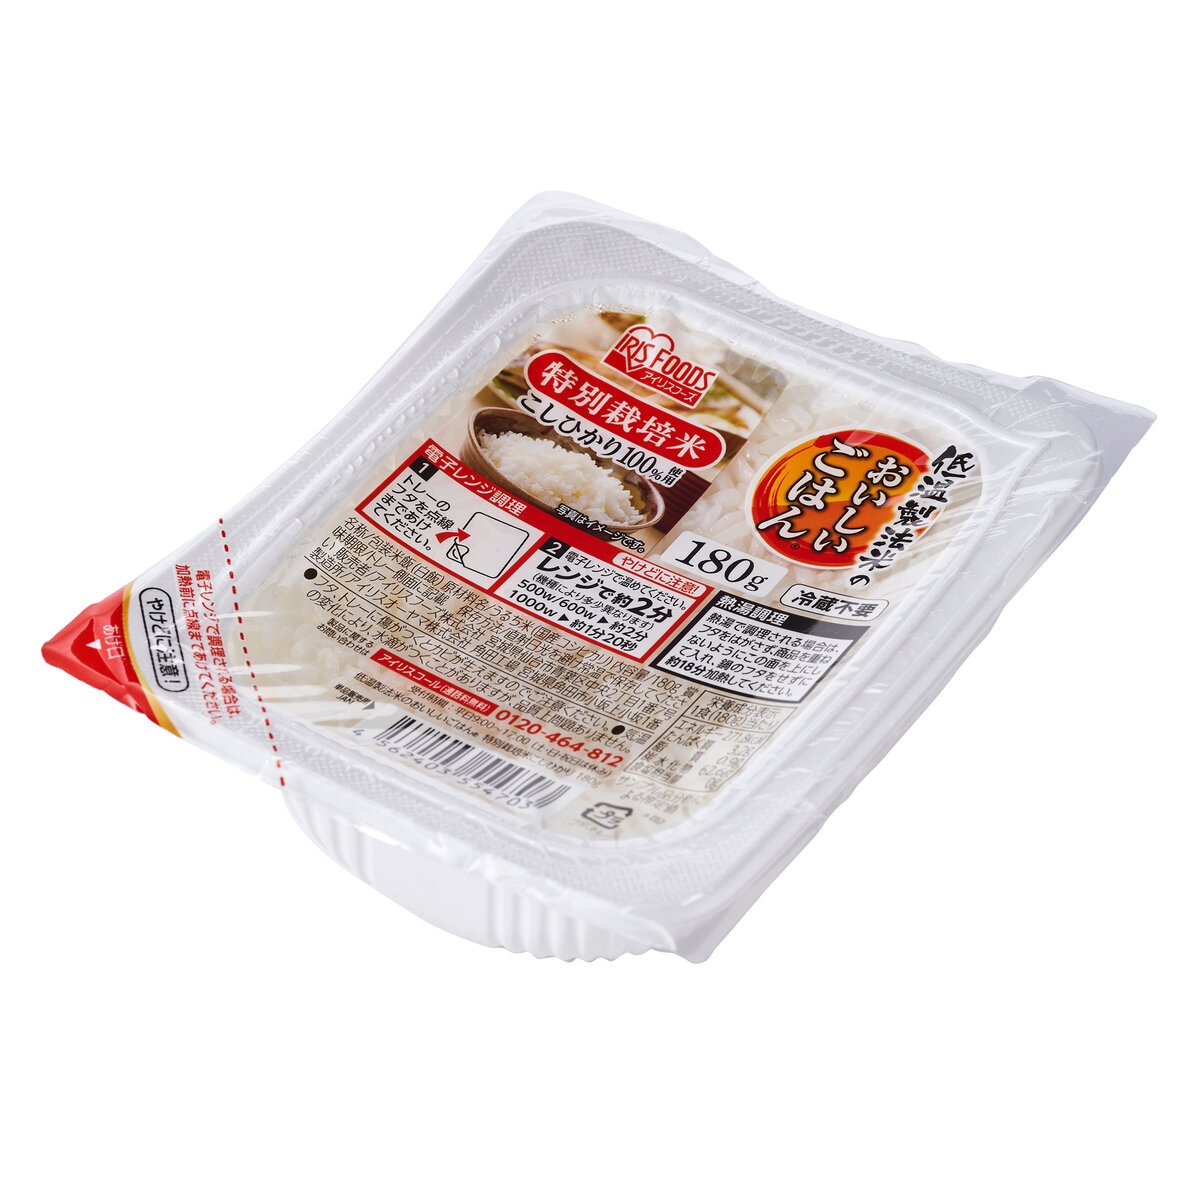 アイリスオーヤマ 低温製法米パックライス 180g x 10パック 特別栽培米こしひかり100%